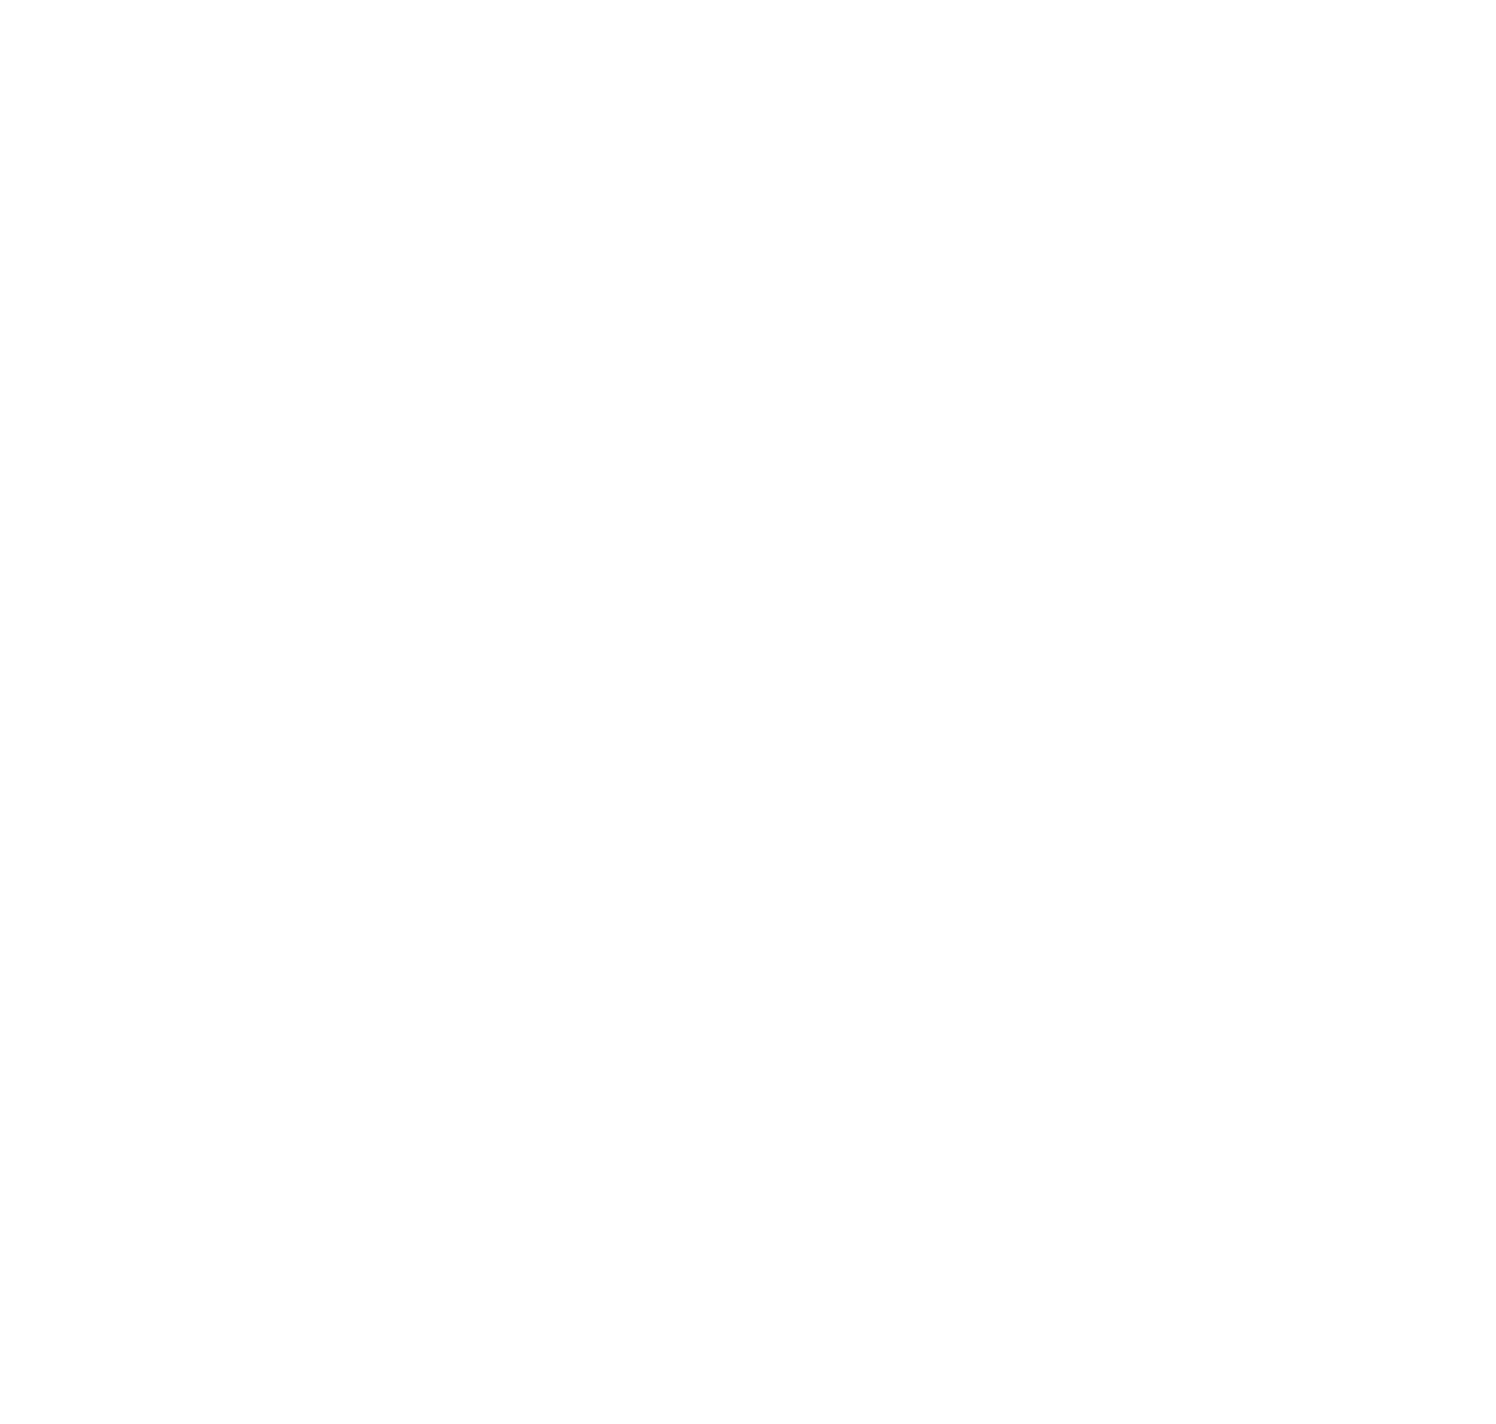 Greif logo for dark backgrounds (transparent PNG)